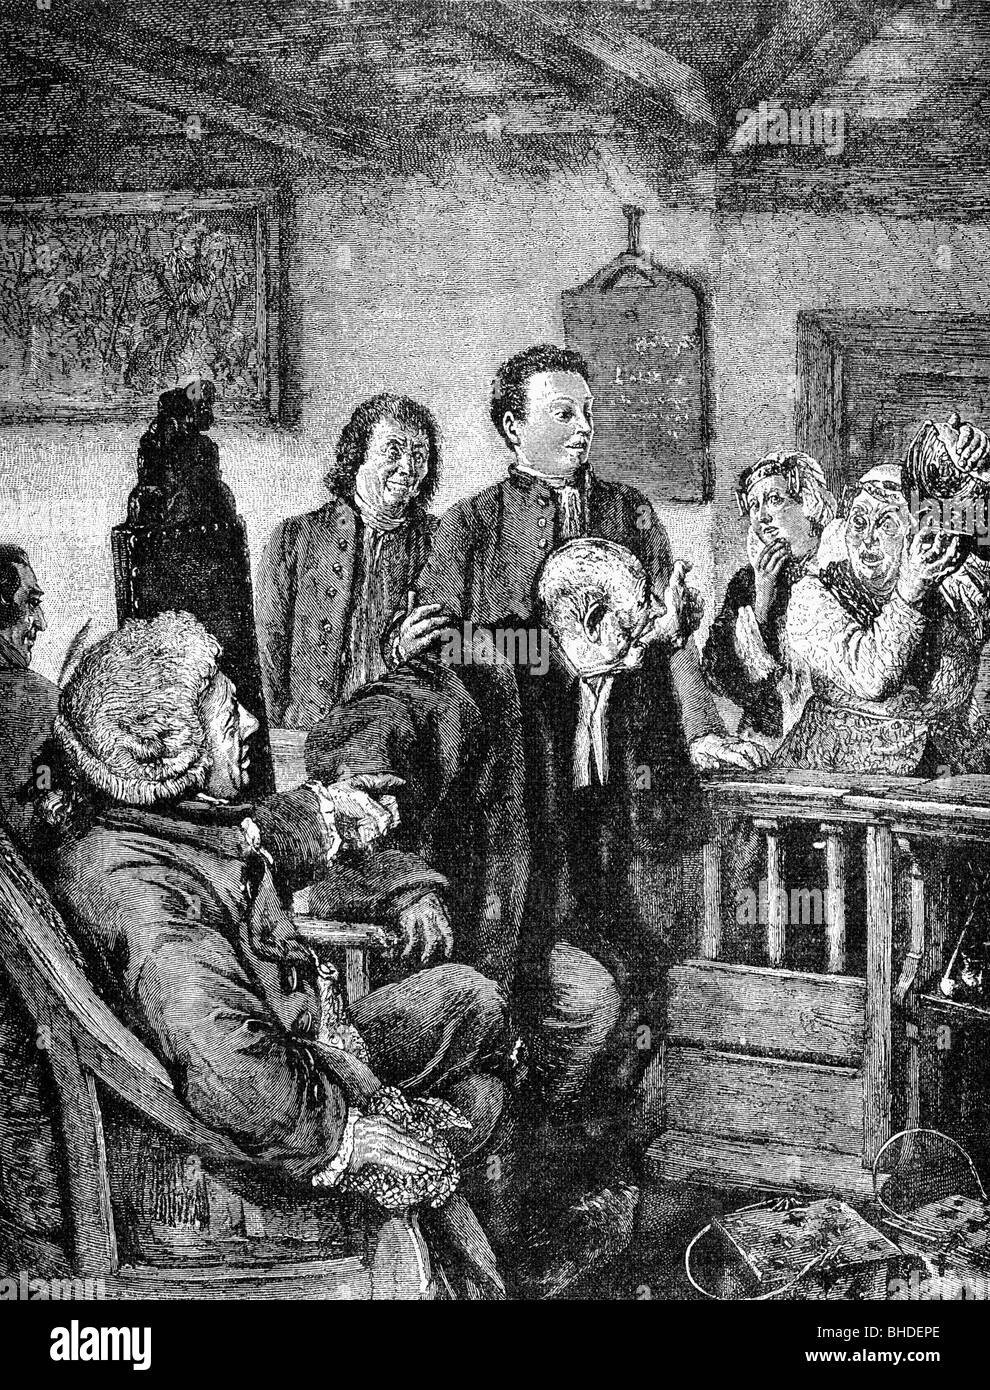 Kleist, Heinrich von, 18.10.1777 - 21.11.1811, German author / writer (poet), stage play 'The Broken Jug', scene, wood engraving after drawing by Adolf von Menzel, 1877, Stock Photo